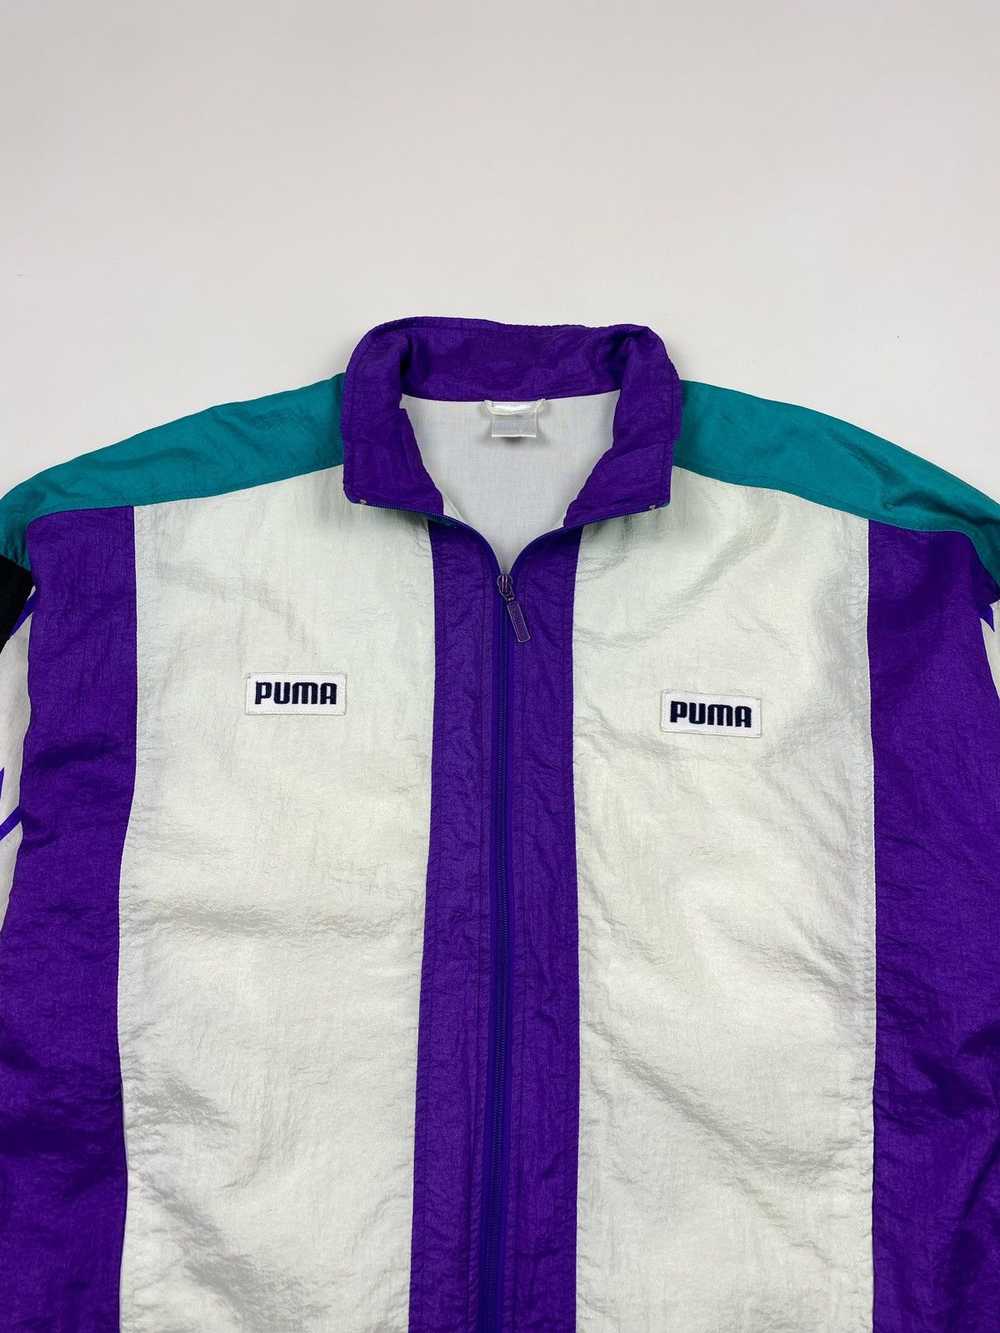 Puma × Sportswear × Vintage 1990’s Vintage Puma T… - image 2